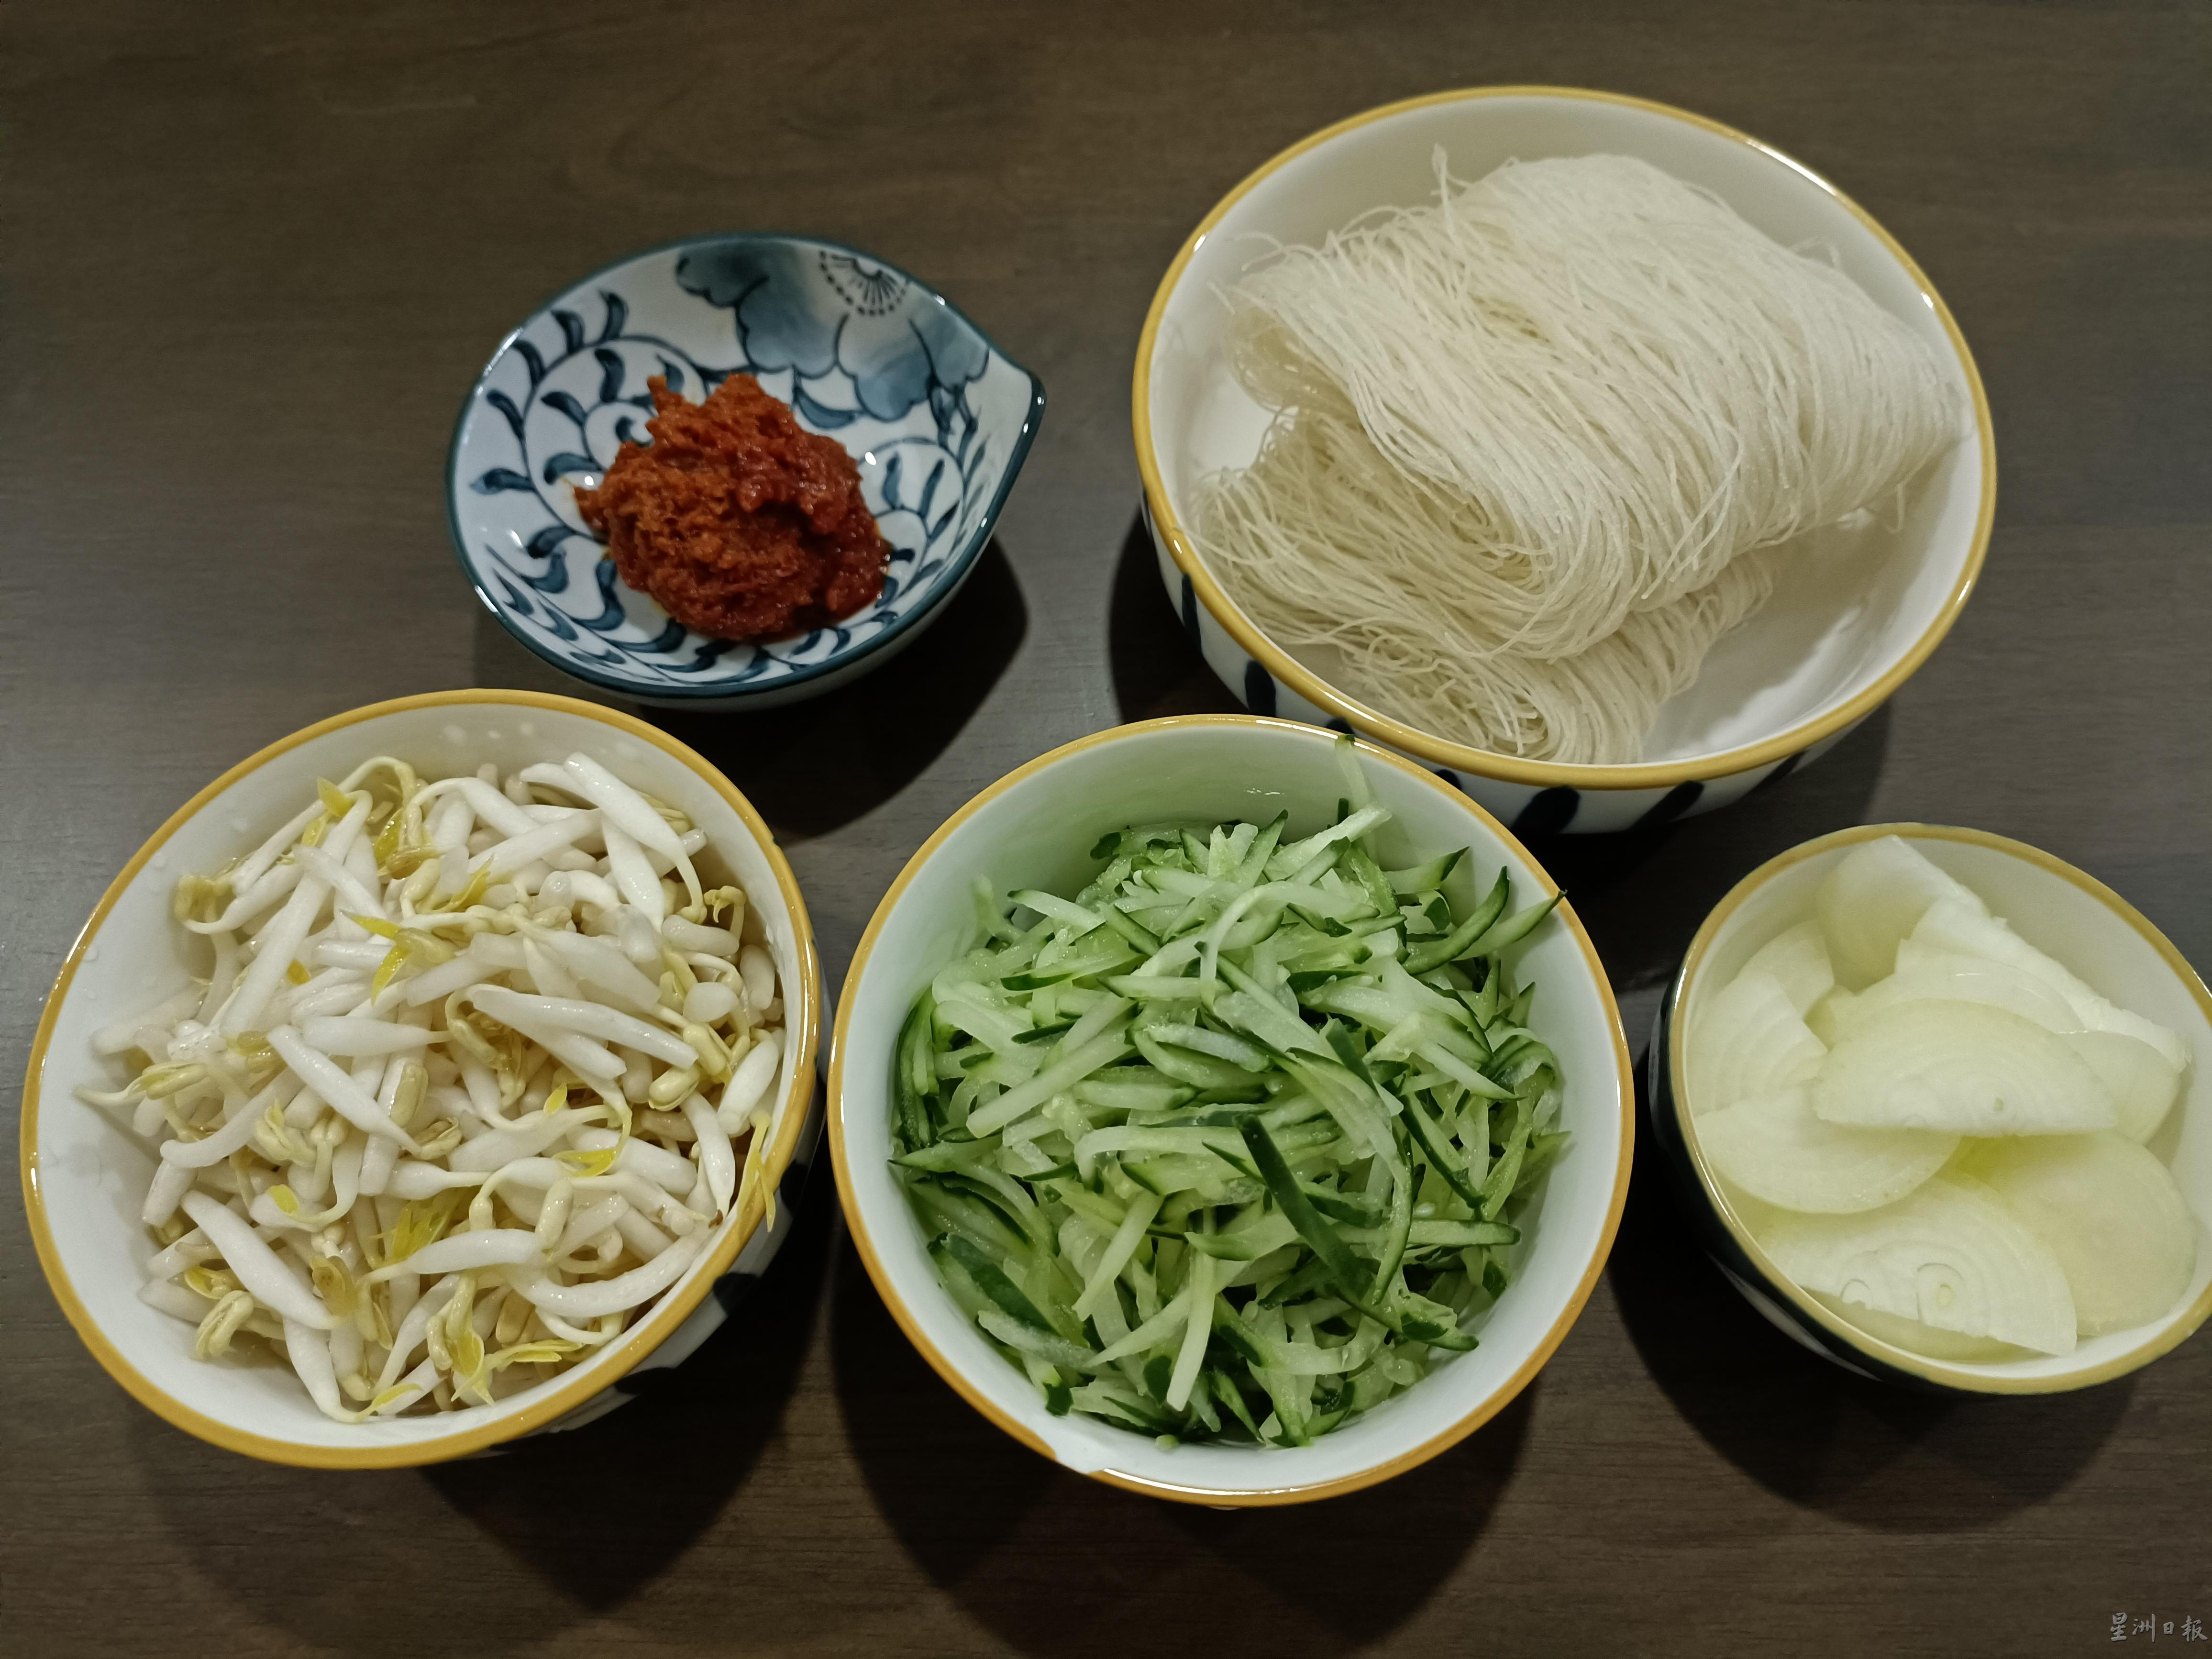 黄姜炒米粉配青瓜丝的材料：米粉、大葱、辣椒酱、青瓜、虾米碎、豆芽。